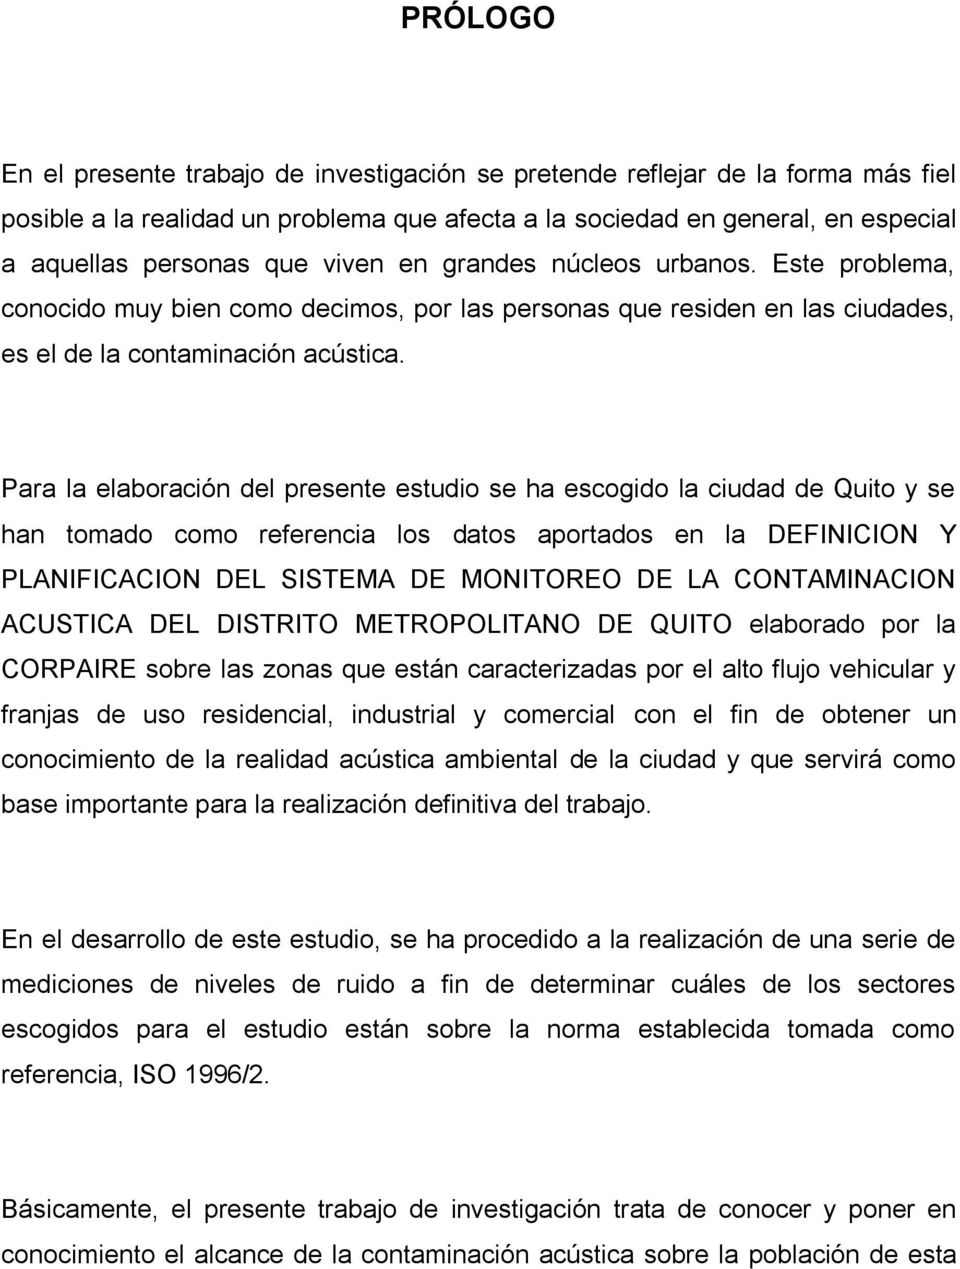 Para la elaboración del presente estudio se ha escogido la ciudad de Quito y se han tomado como referencia los datos aportados en la DEFINICION Y PLANIFICACION DEL SISTEMA DE MONITOREO DE LA